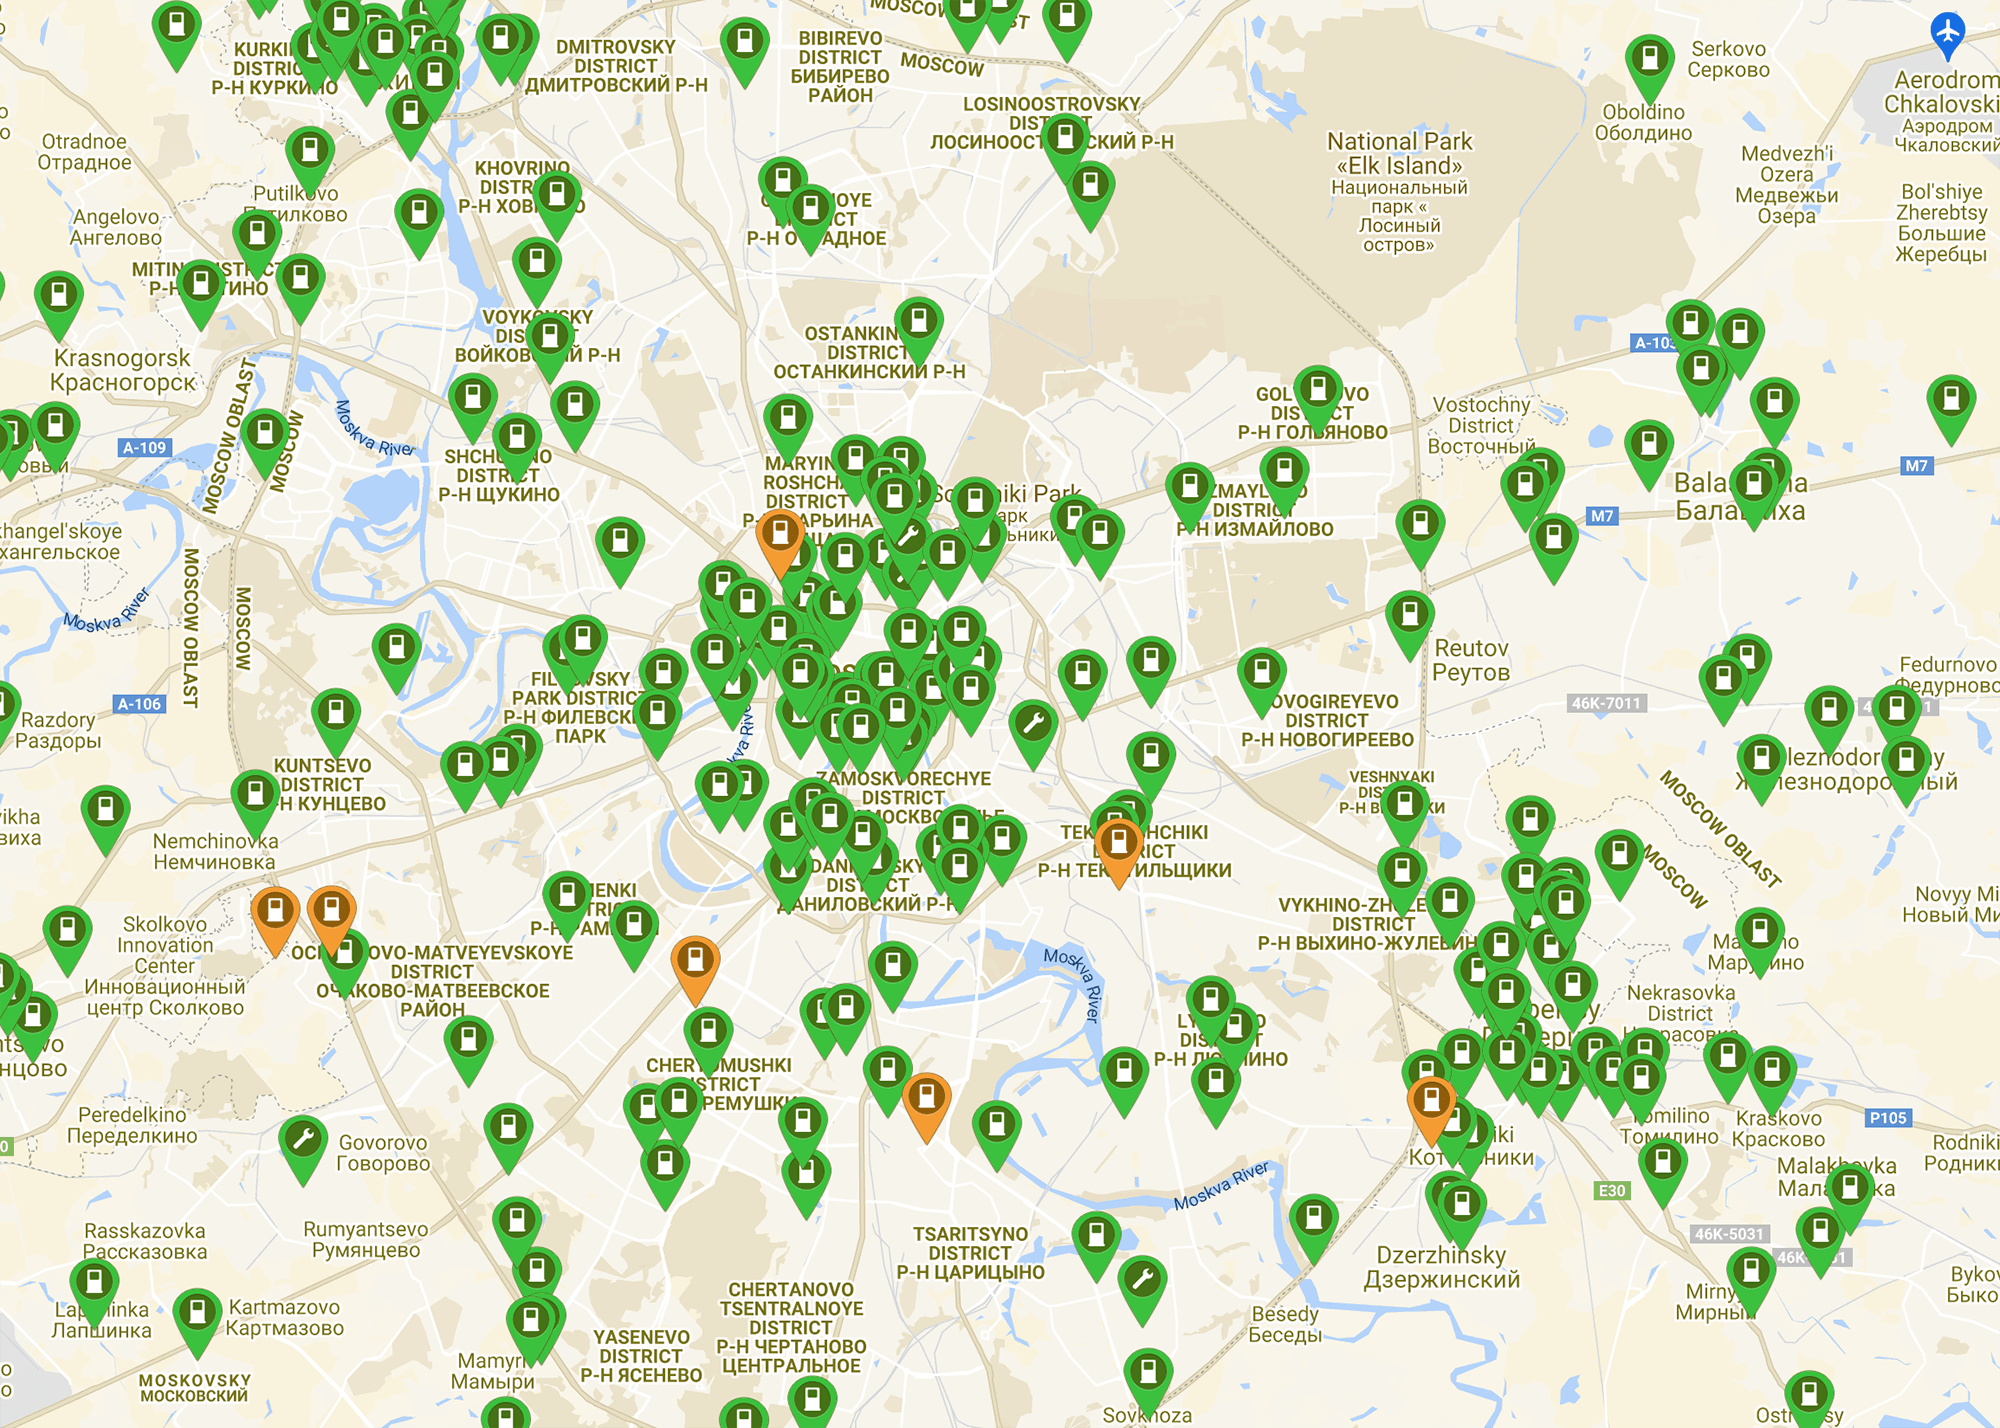 Карта московских зарядных станций на plugshare.com (сайт доступен с VPN)